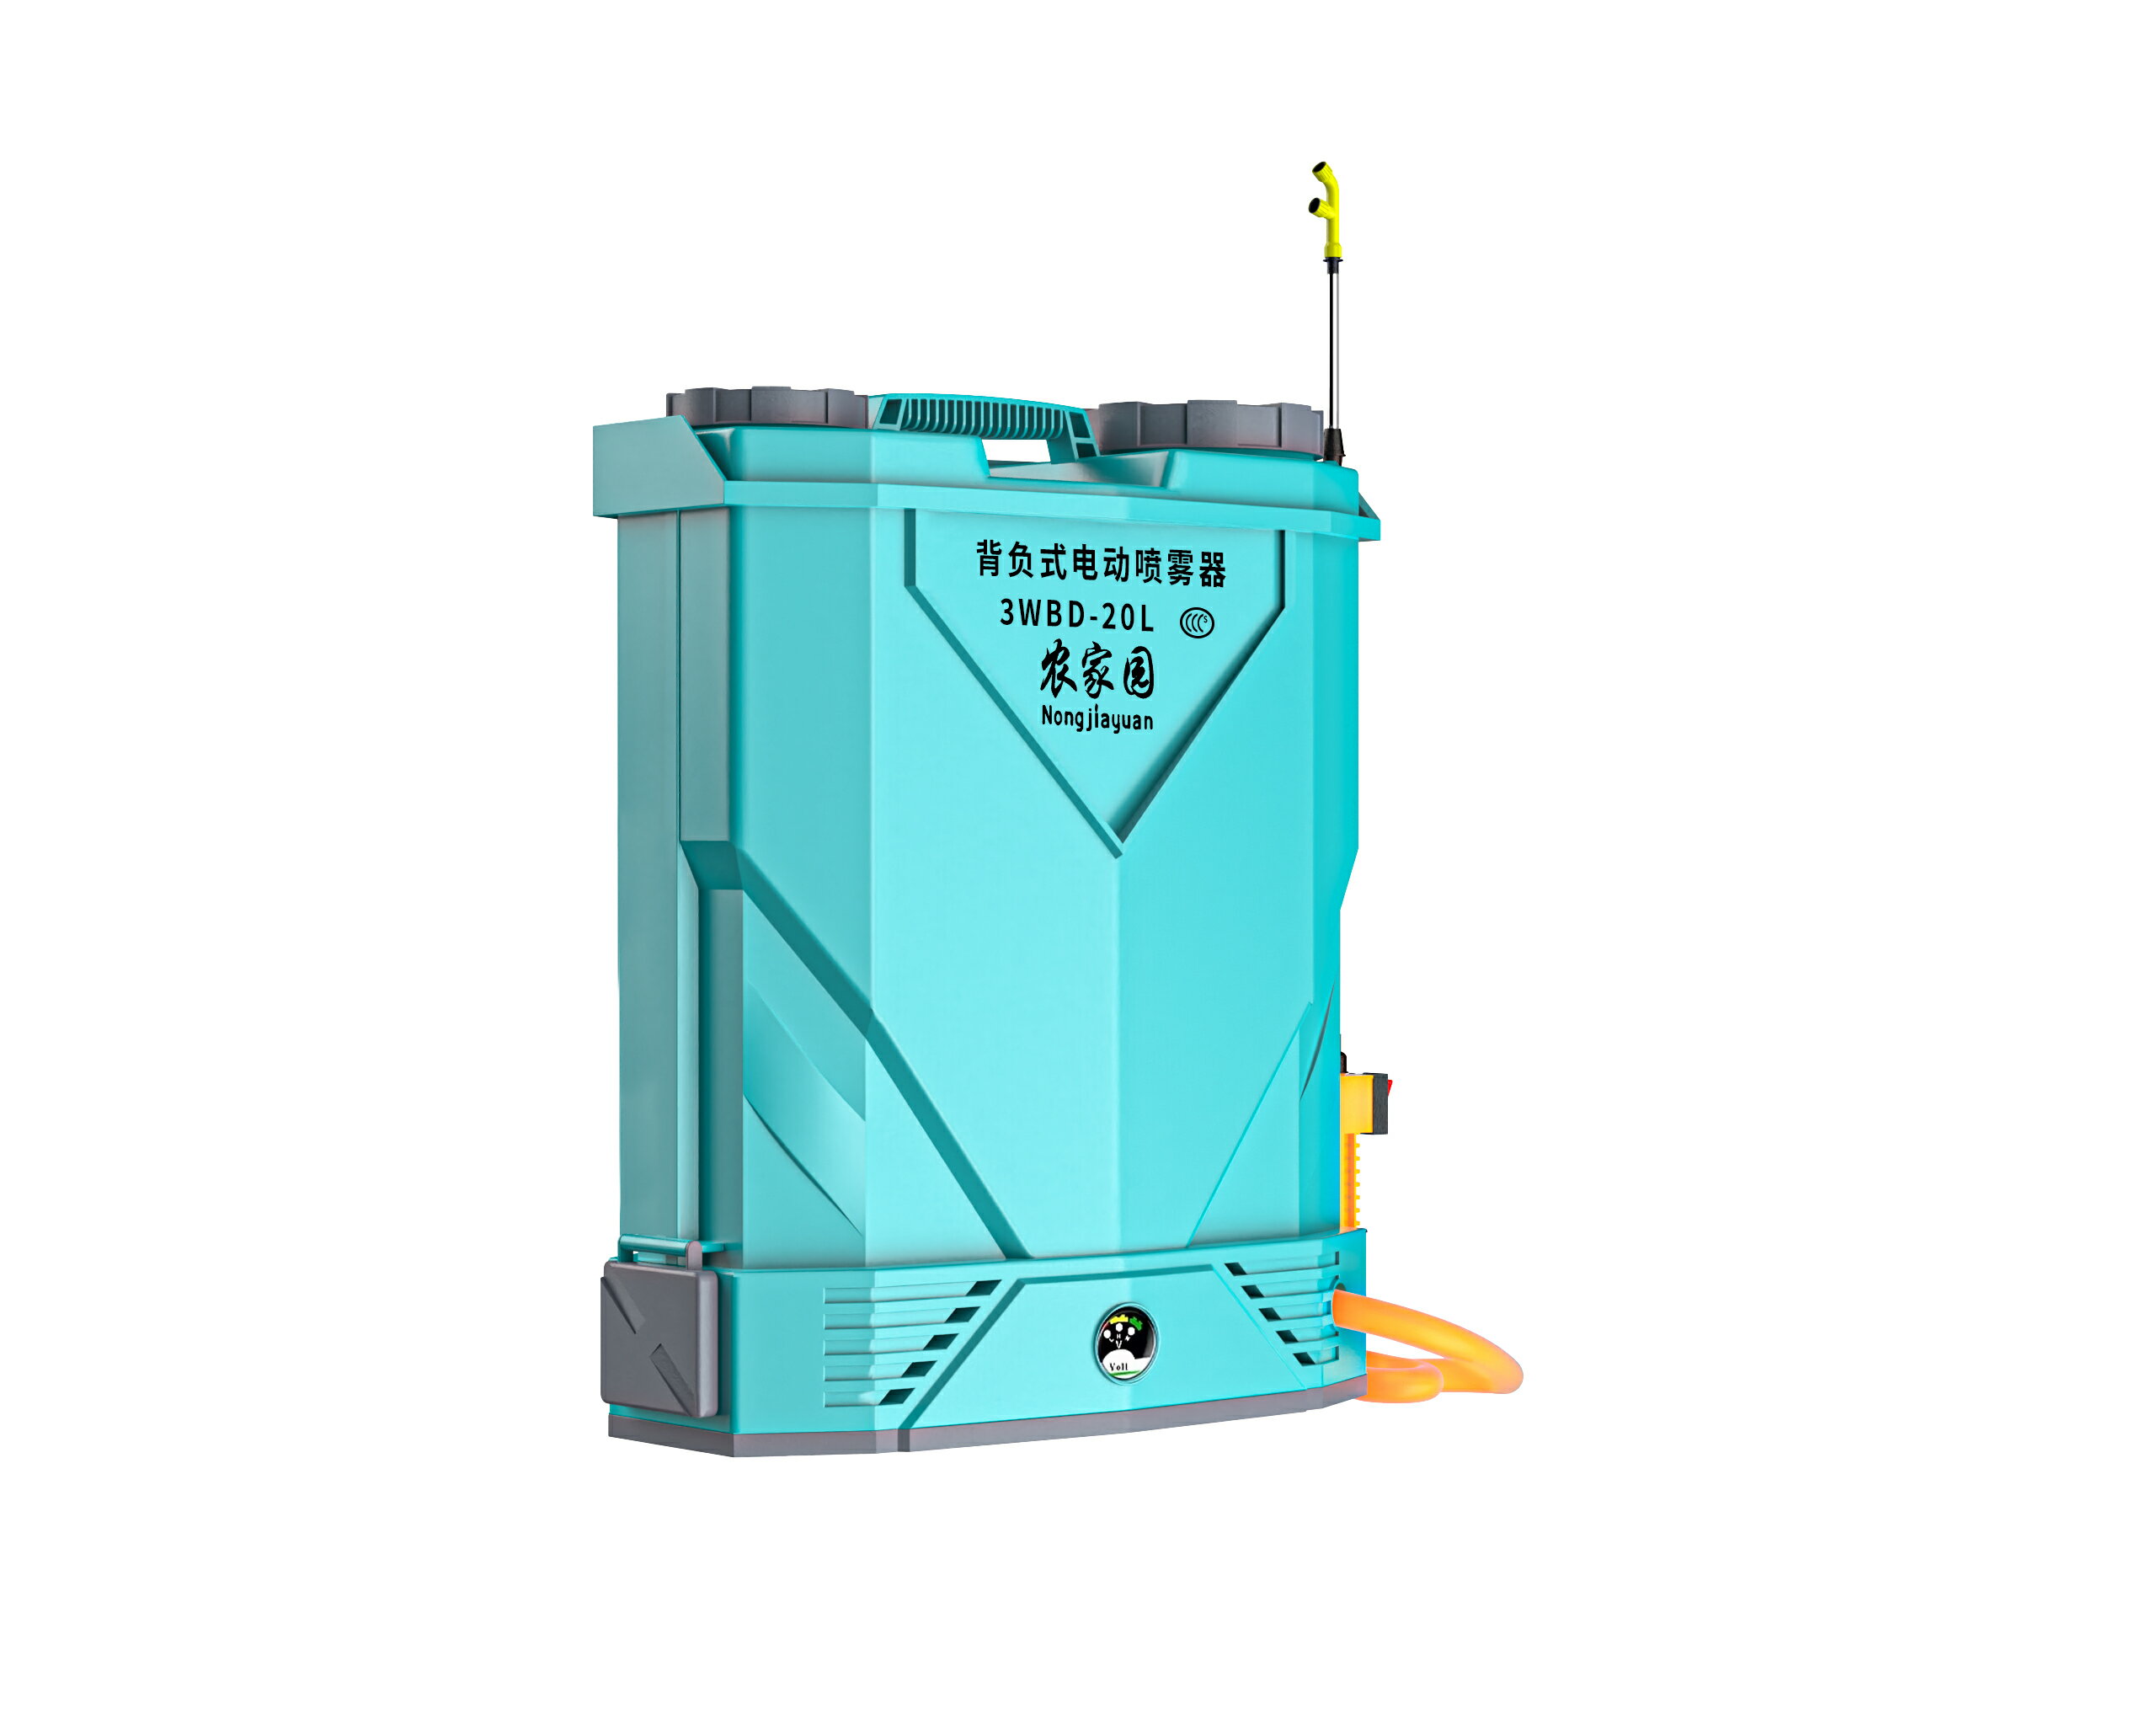 雙泵高壓電動噴霧器農用噴灑背負式打藥機新型果樹園林雙電機水壺